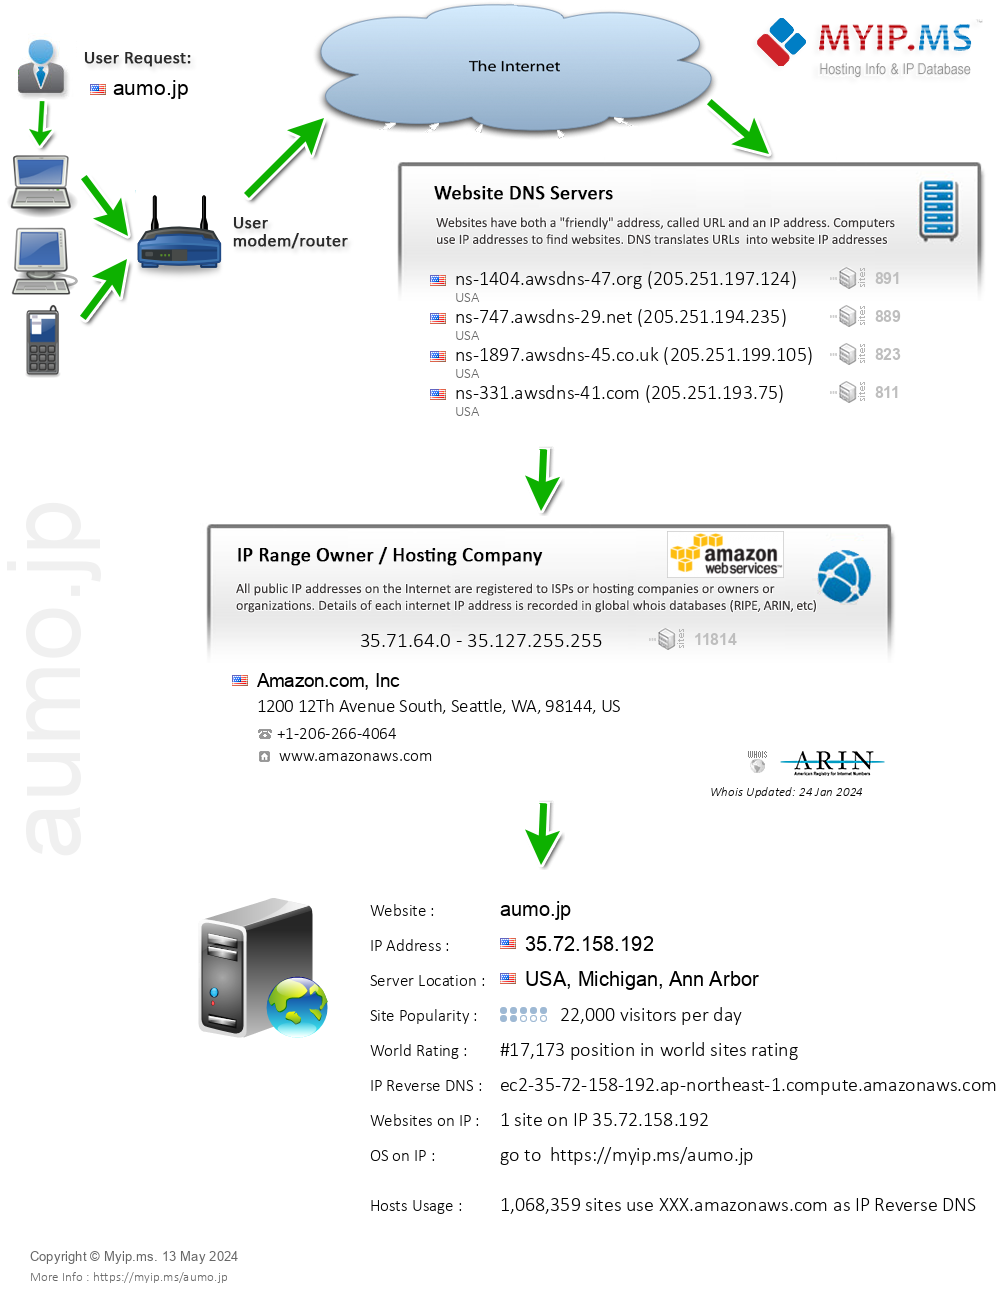 Aumo.jp - Website Hosting Visual IP Diagram